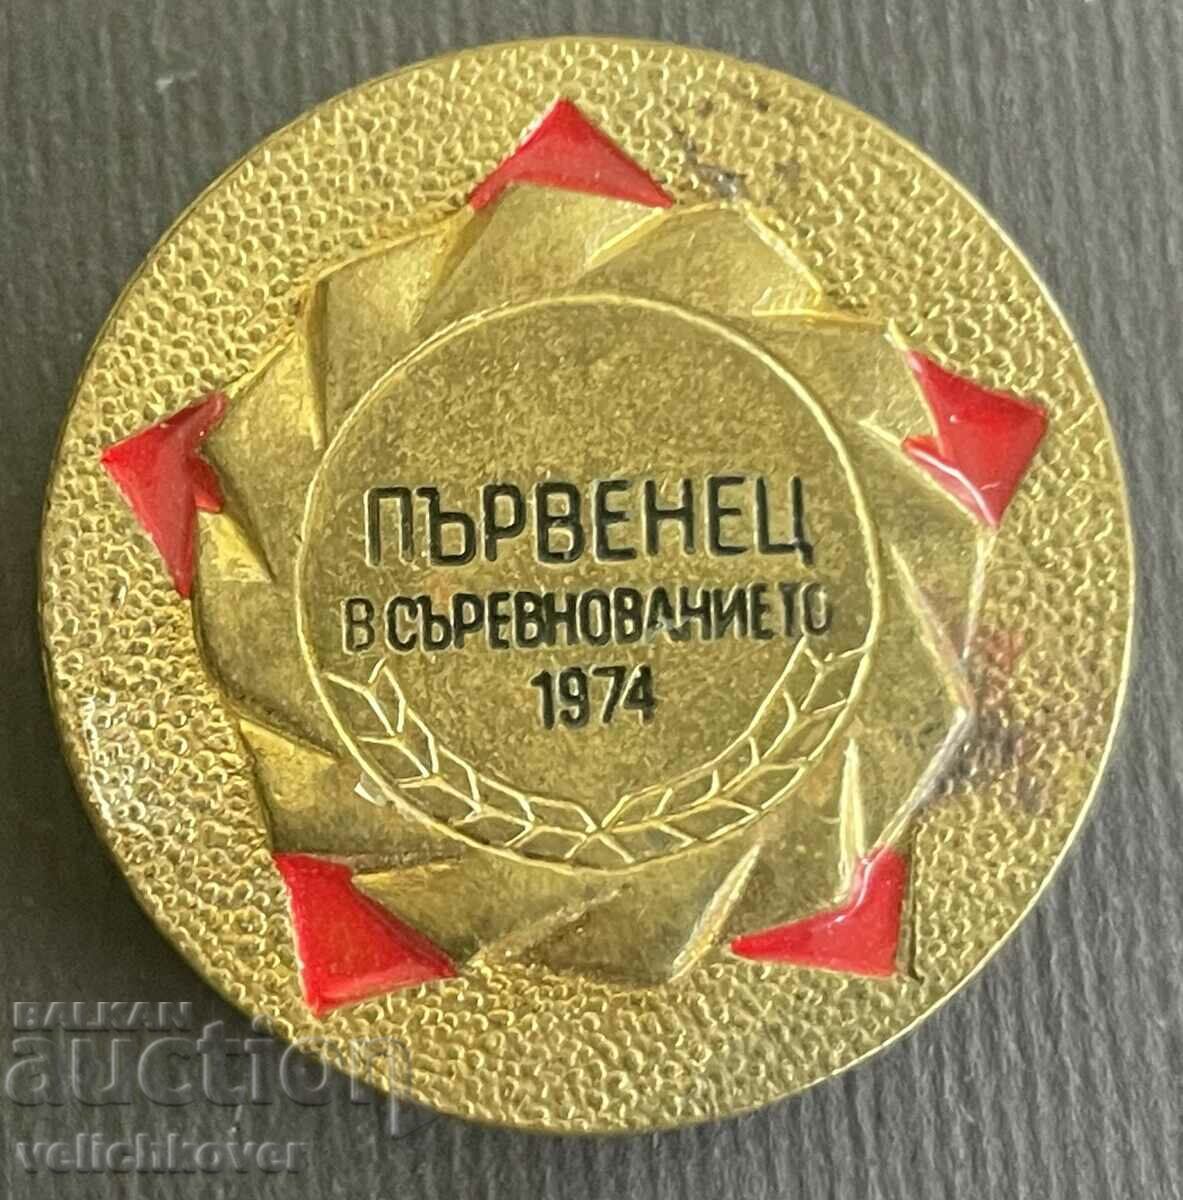 35679 България знак Първенец в Съревнованието 1974г.